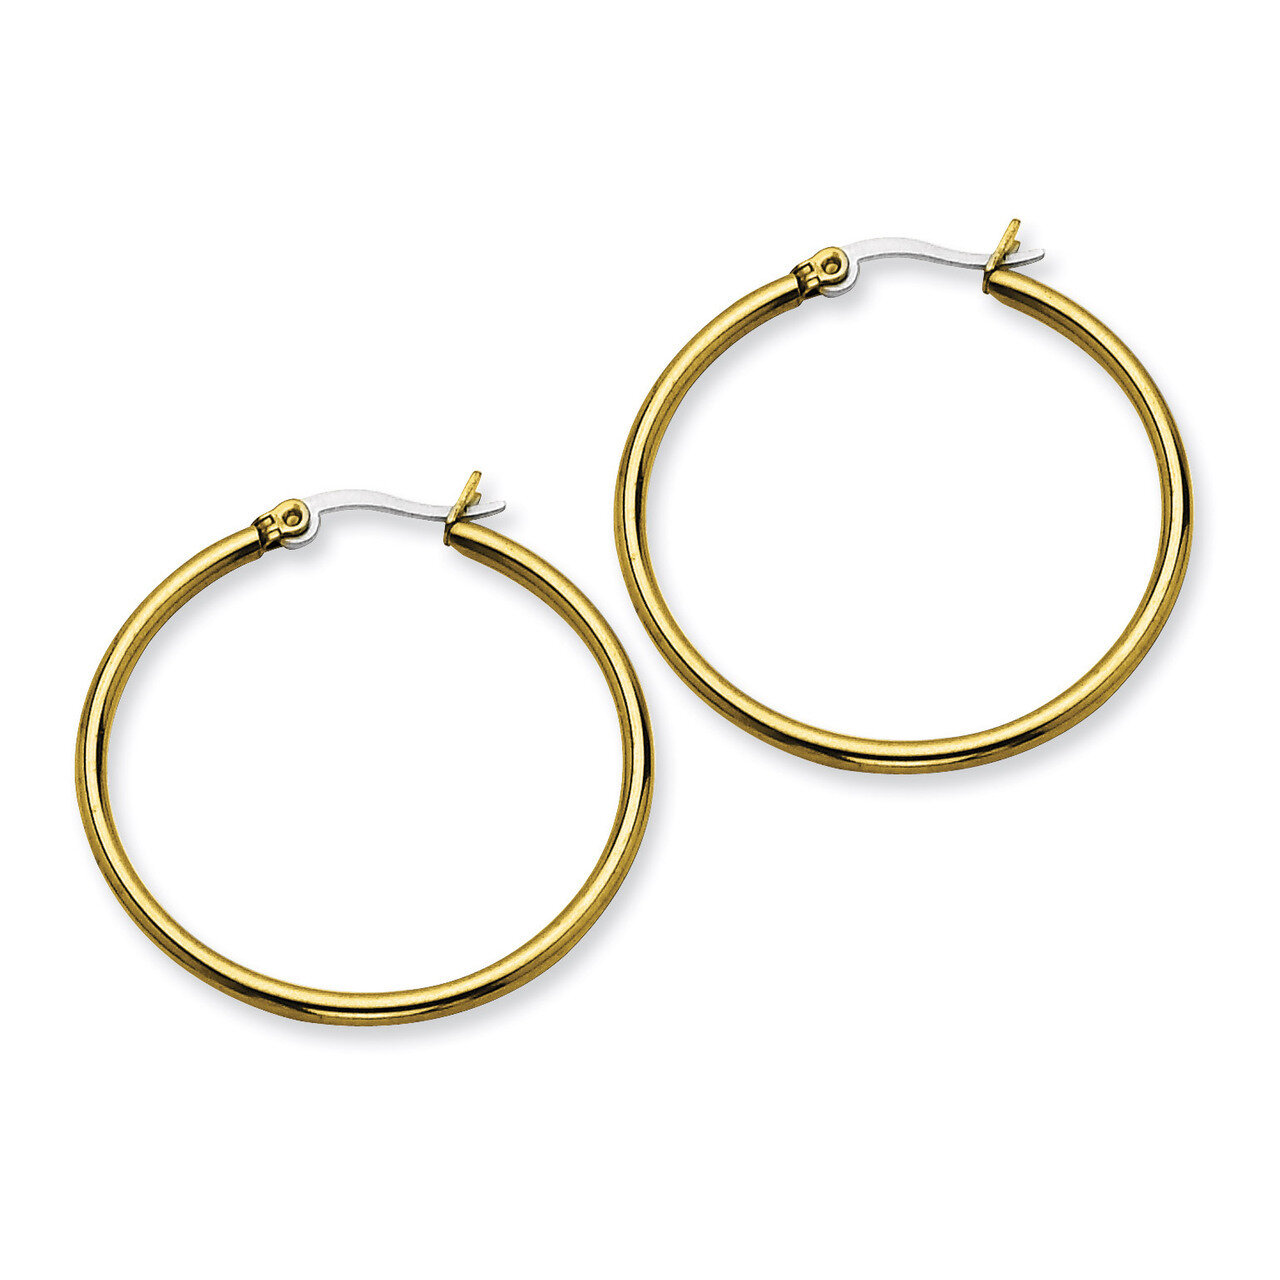 Gold IP plated 32mm Hoop Earrings - Stainless Steel SRE560